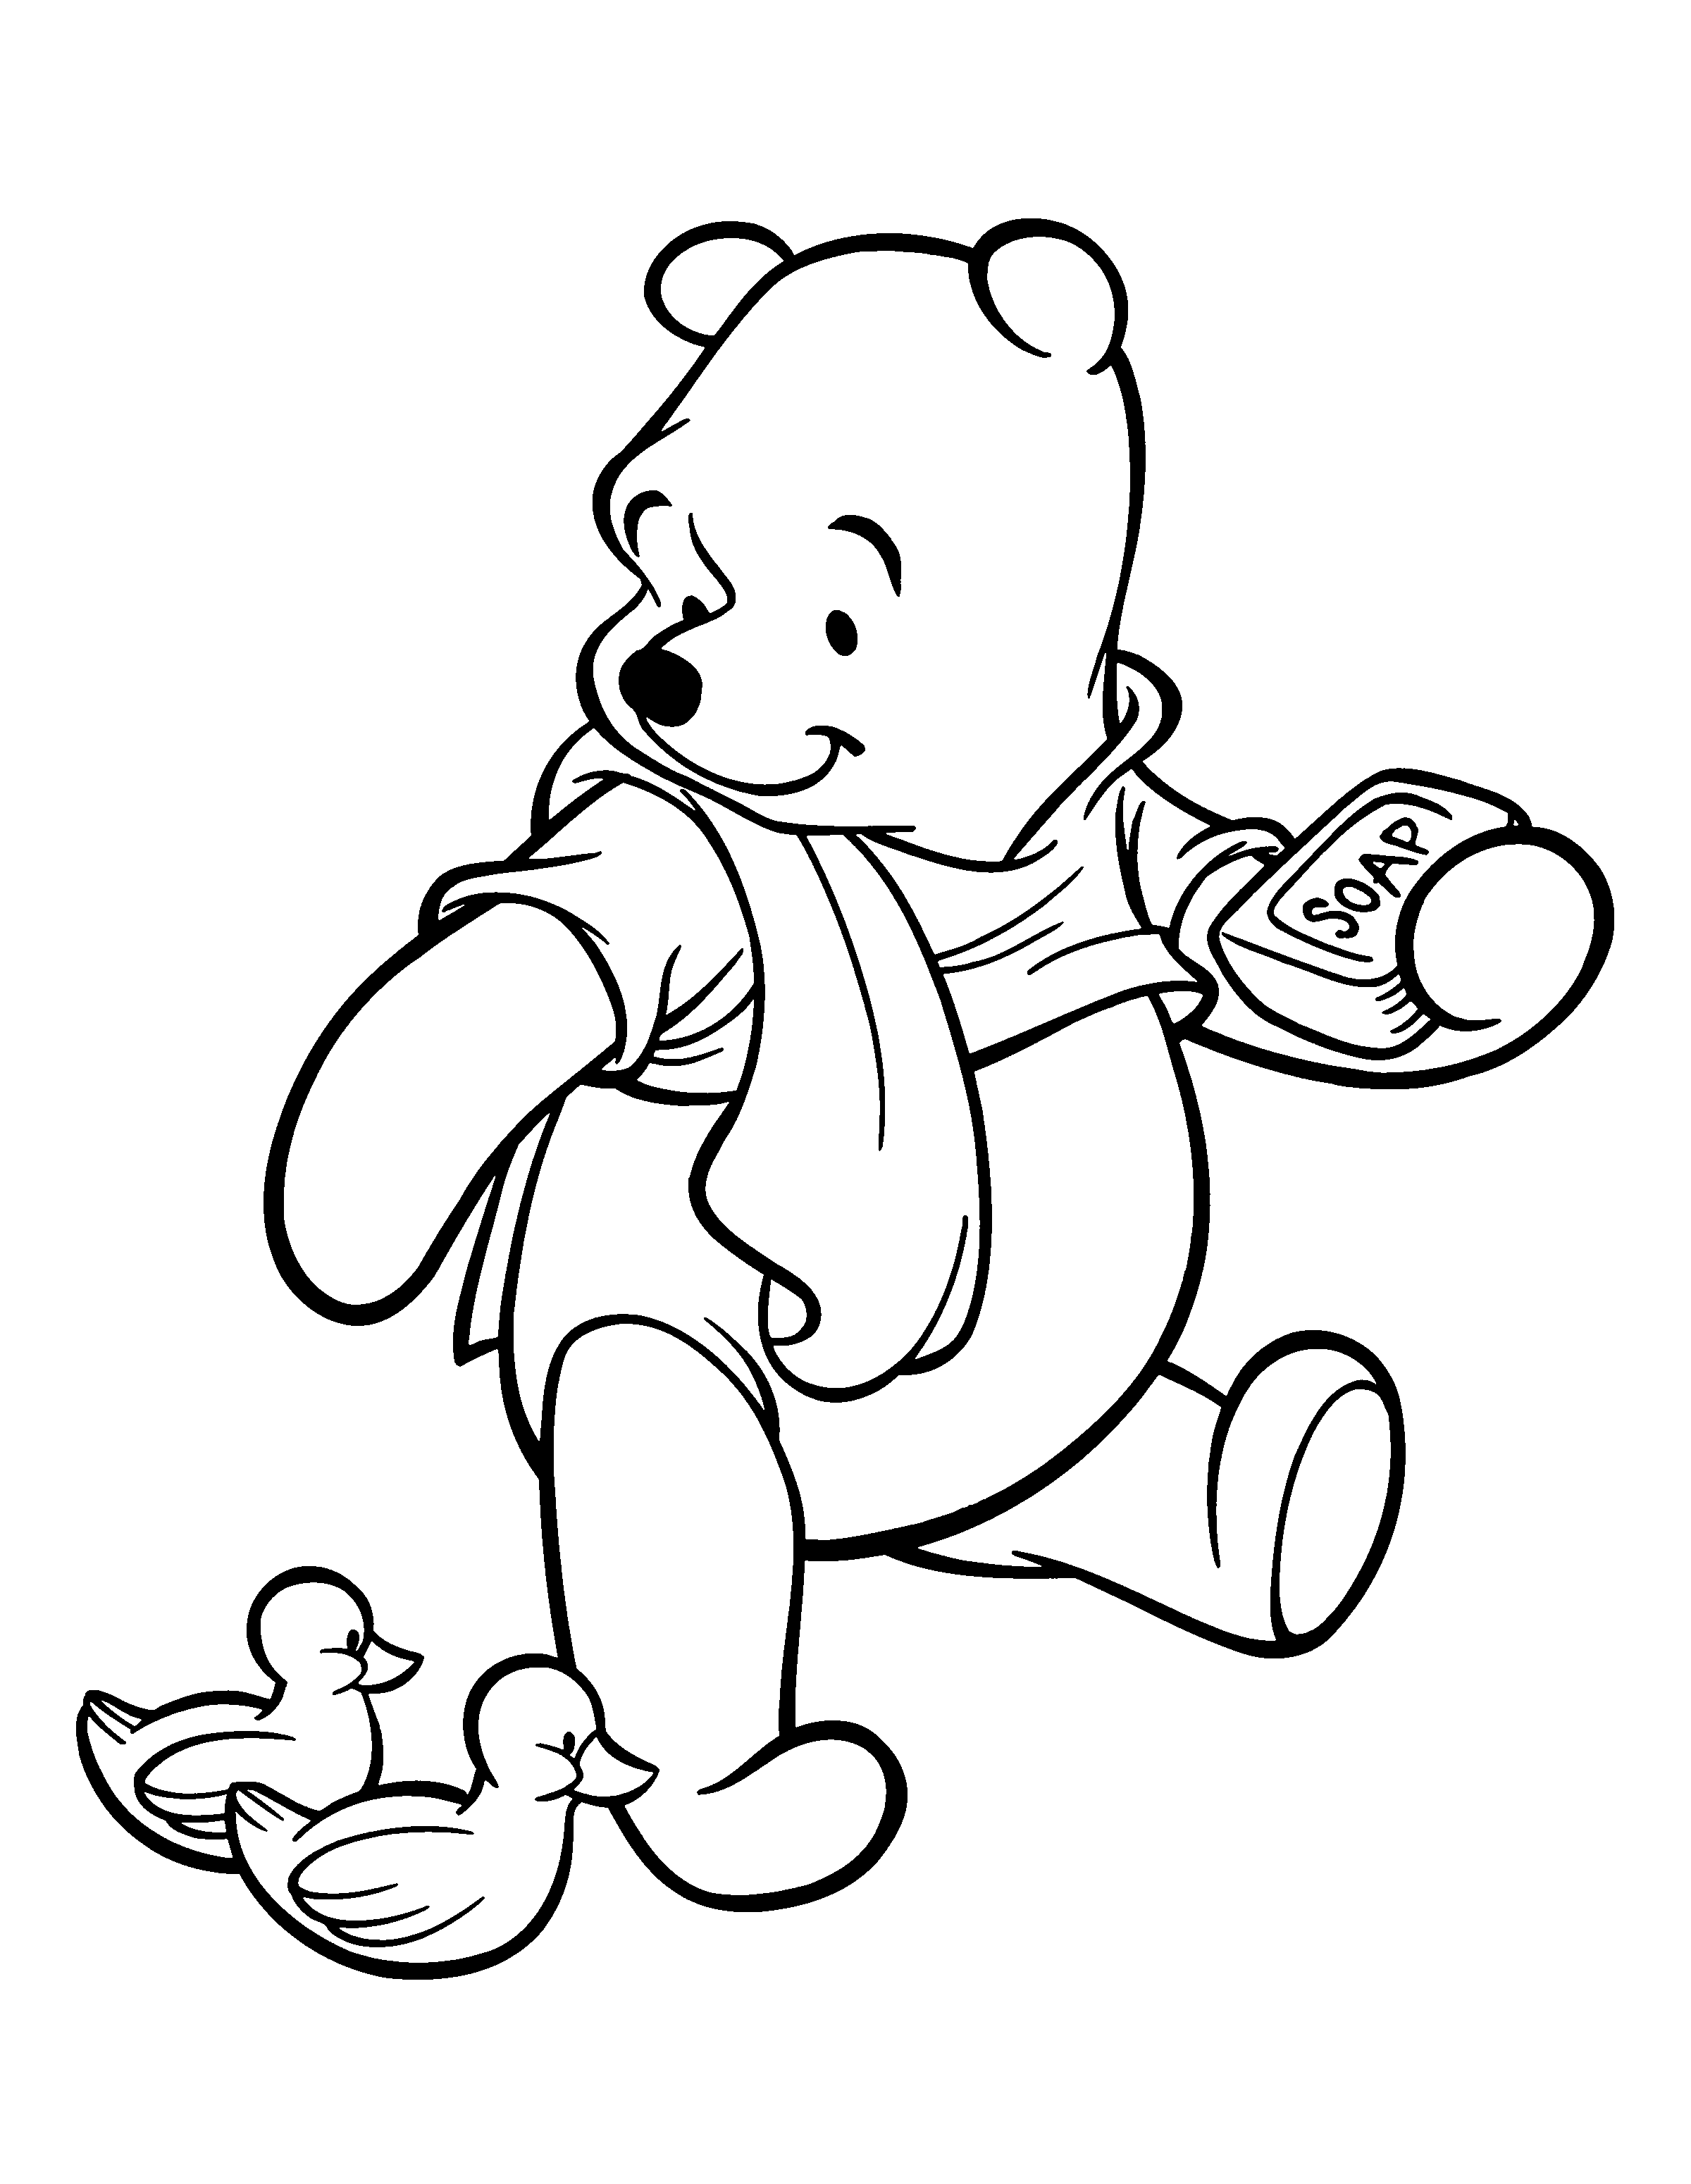 imagens do winnie the pooh para colorir